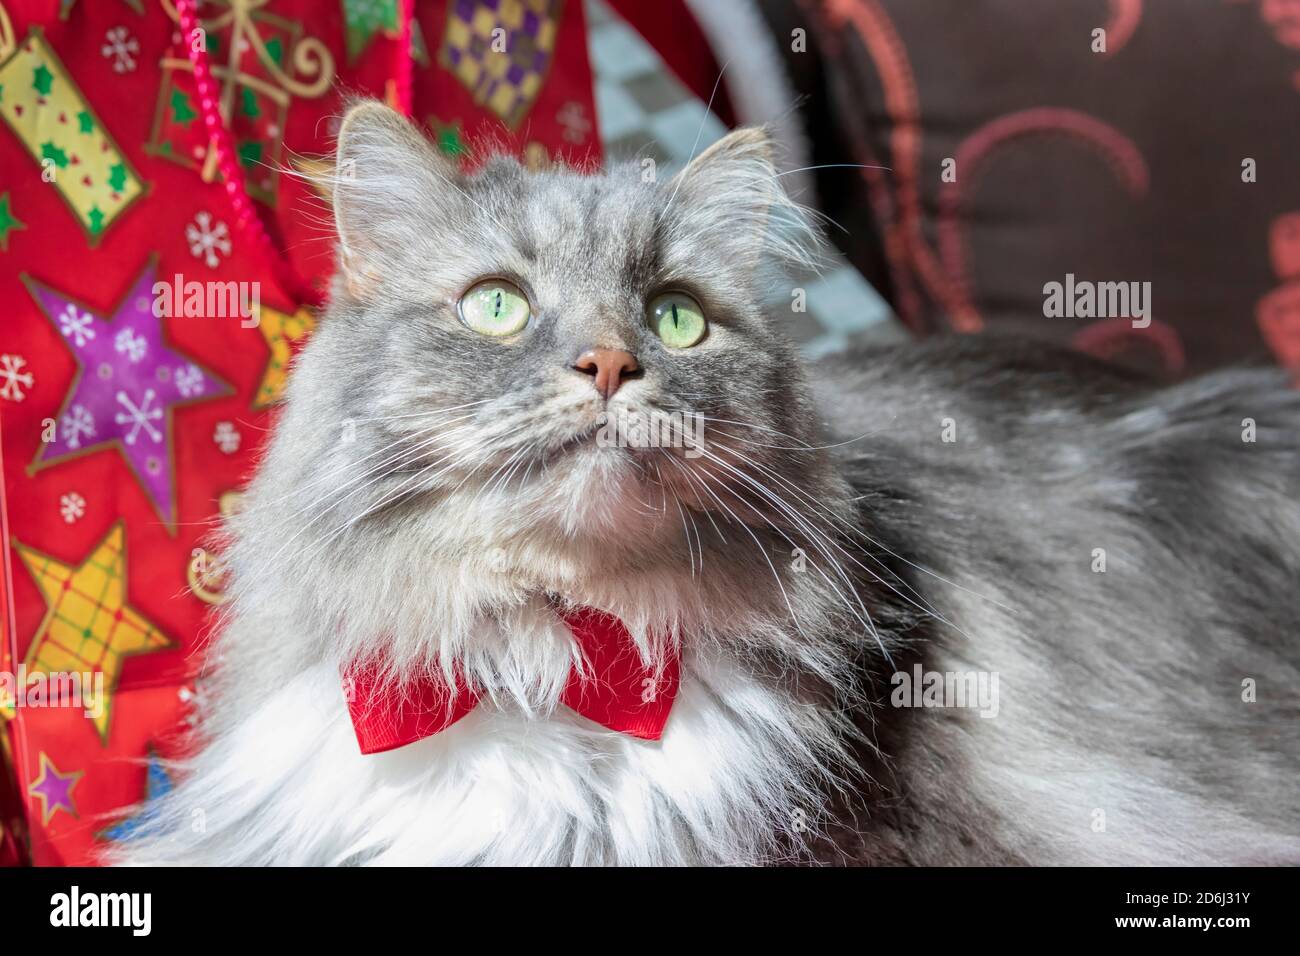 Eine langhaarige grau gestromte Katze mit einem Weihnachtsthema. Sibirische Waldkatze mit grünen Augen und einer weißen Mähne mit roter Fliege. Stockfoto